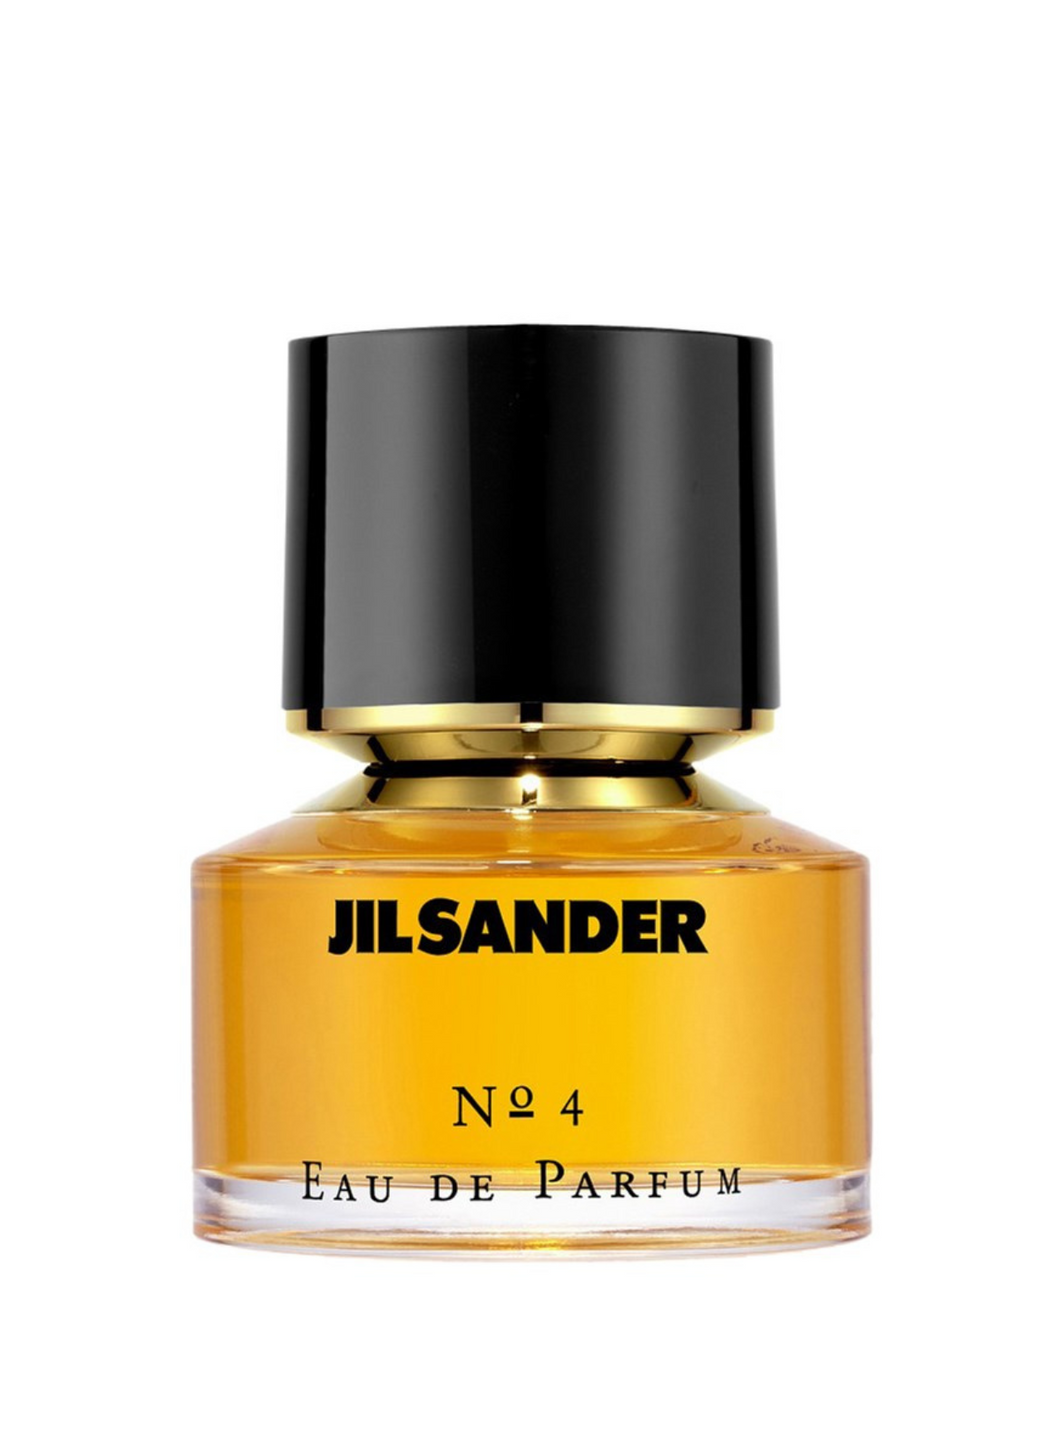 Coty compte développer les parfums de prestige de Jil Sander.